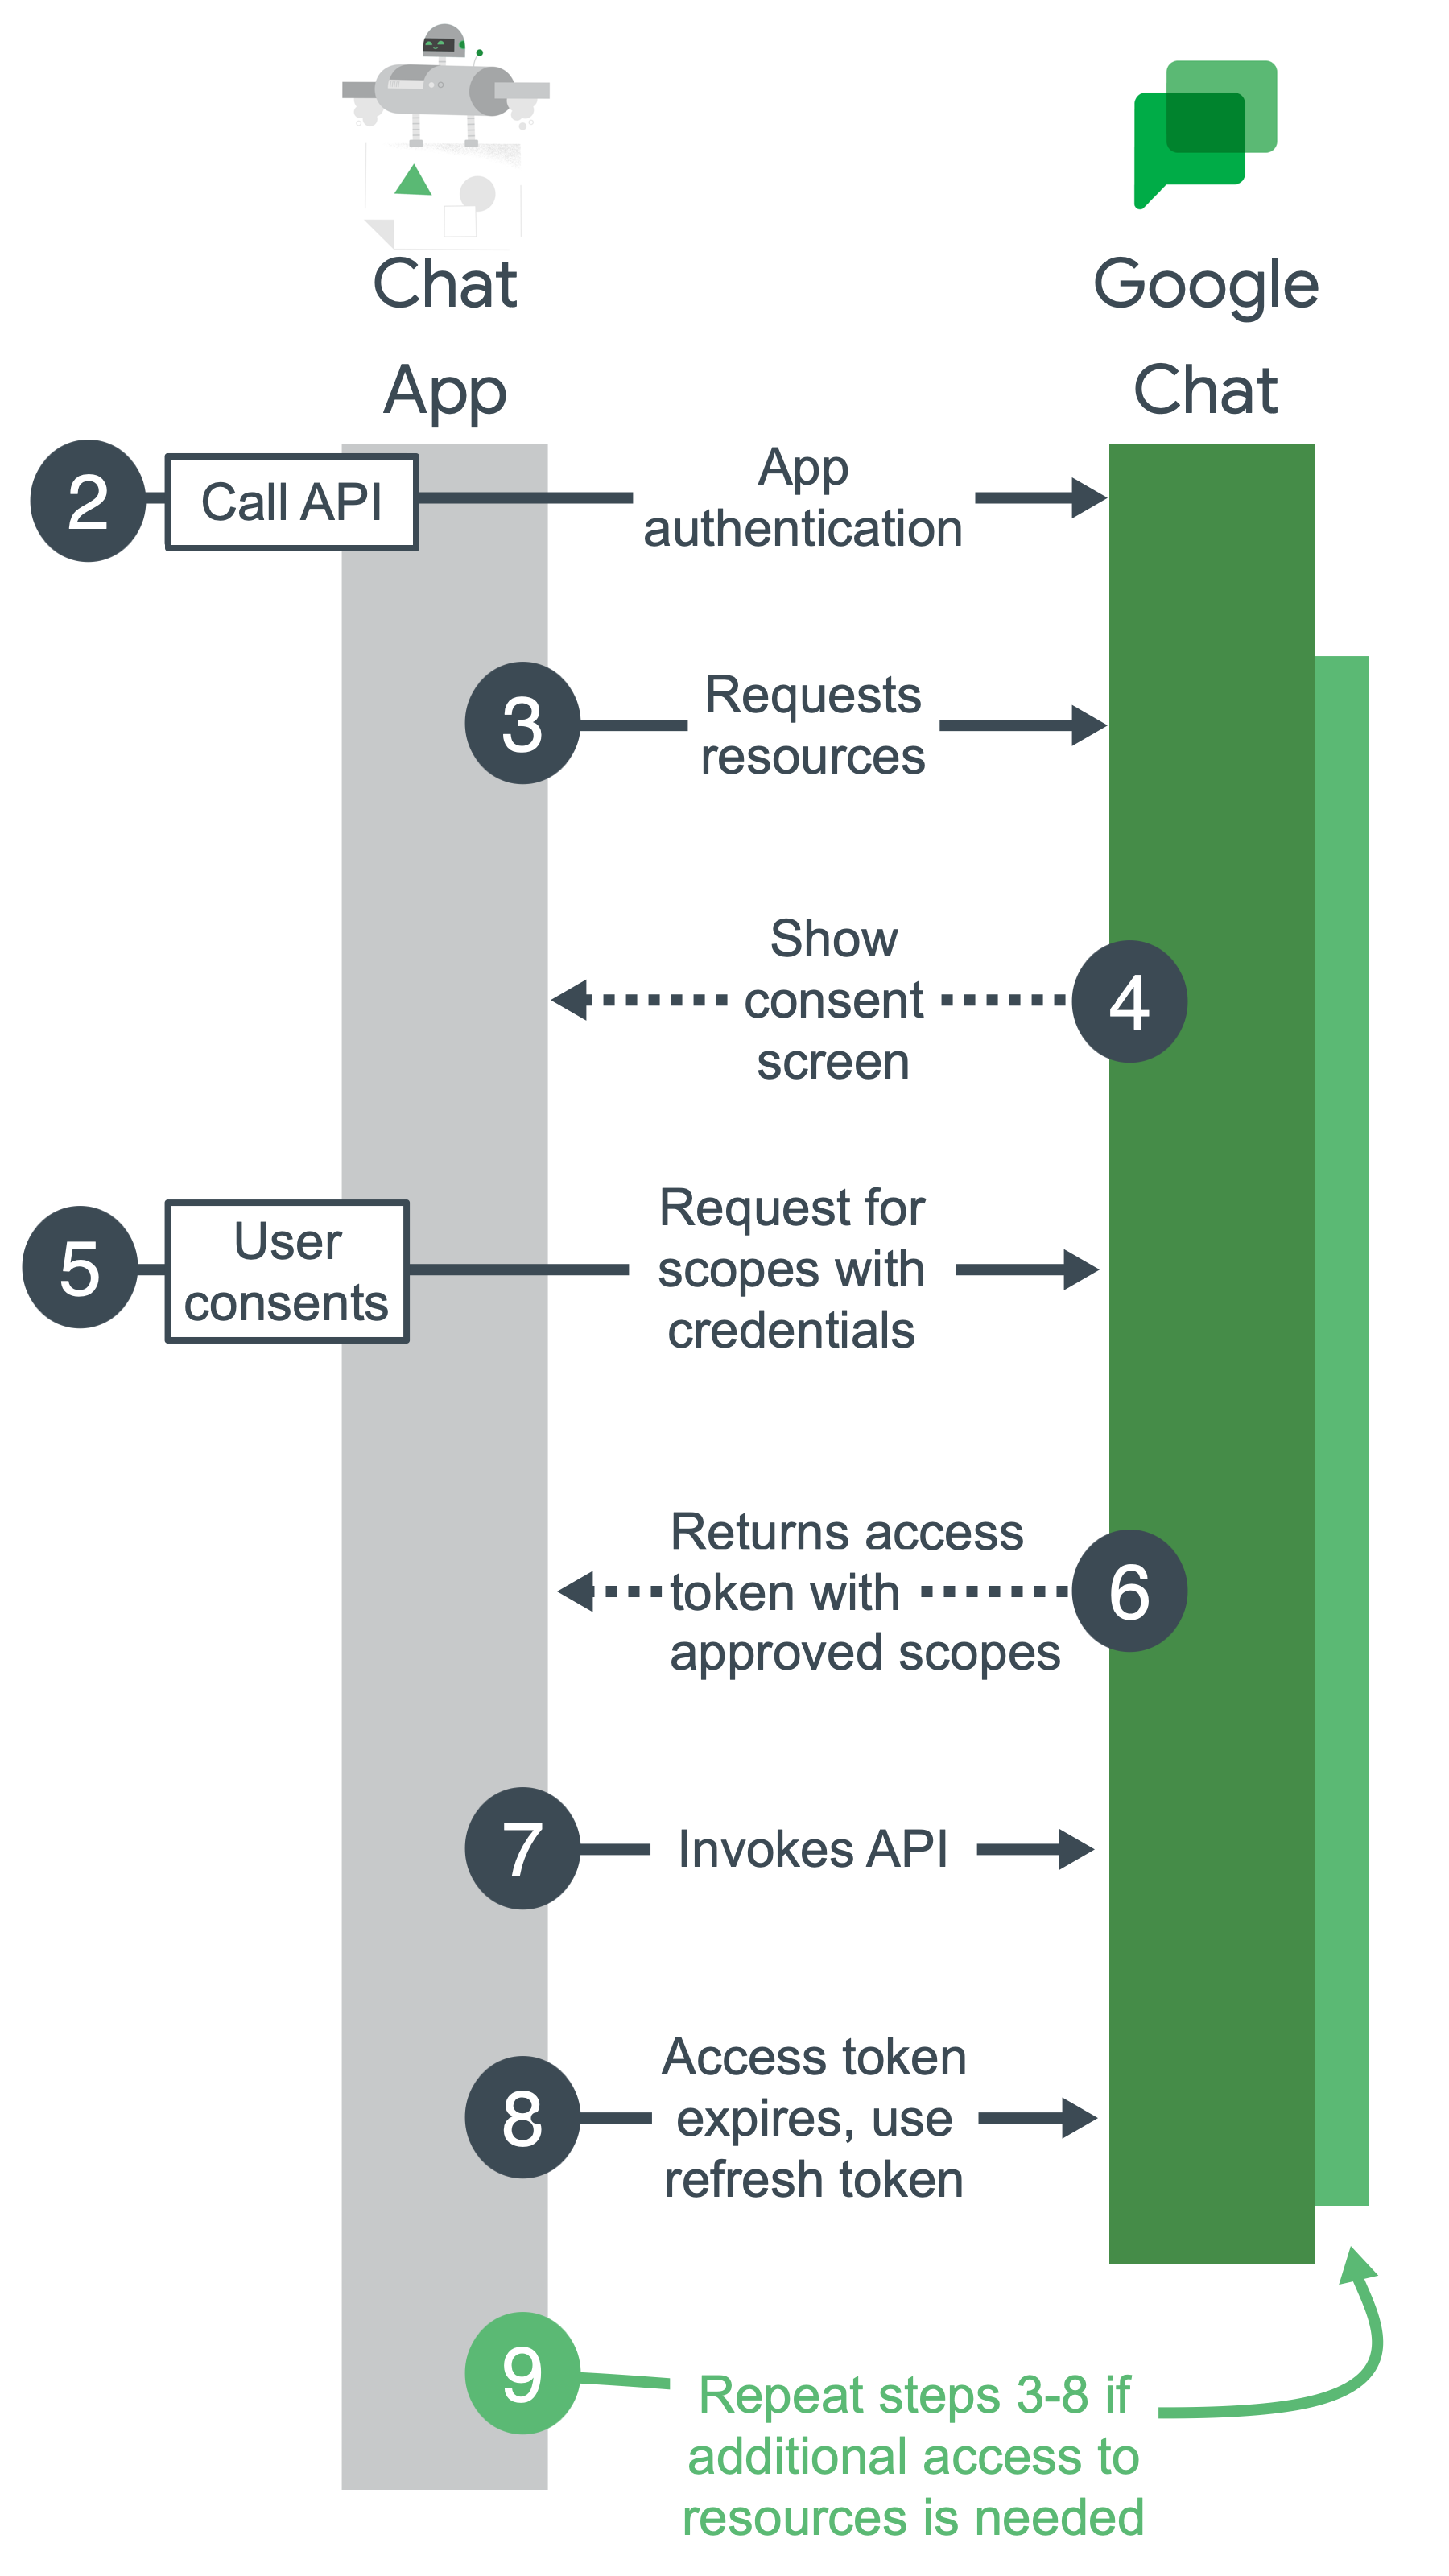 Google Chat kimlik doğrulama ve yetkilendirme için üst düzey adımlar